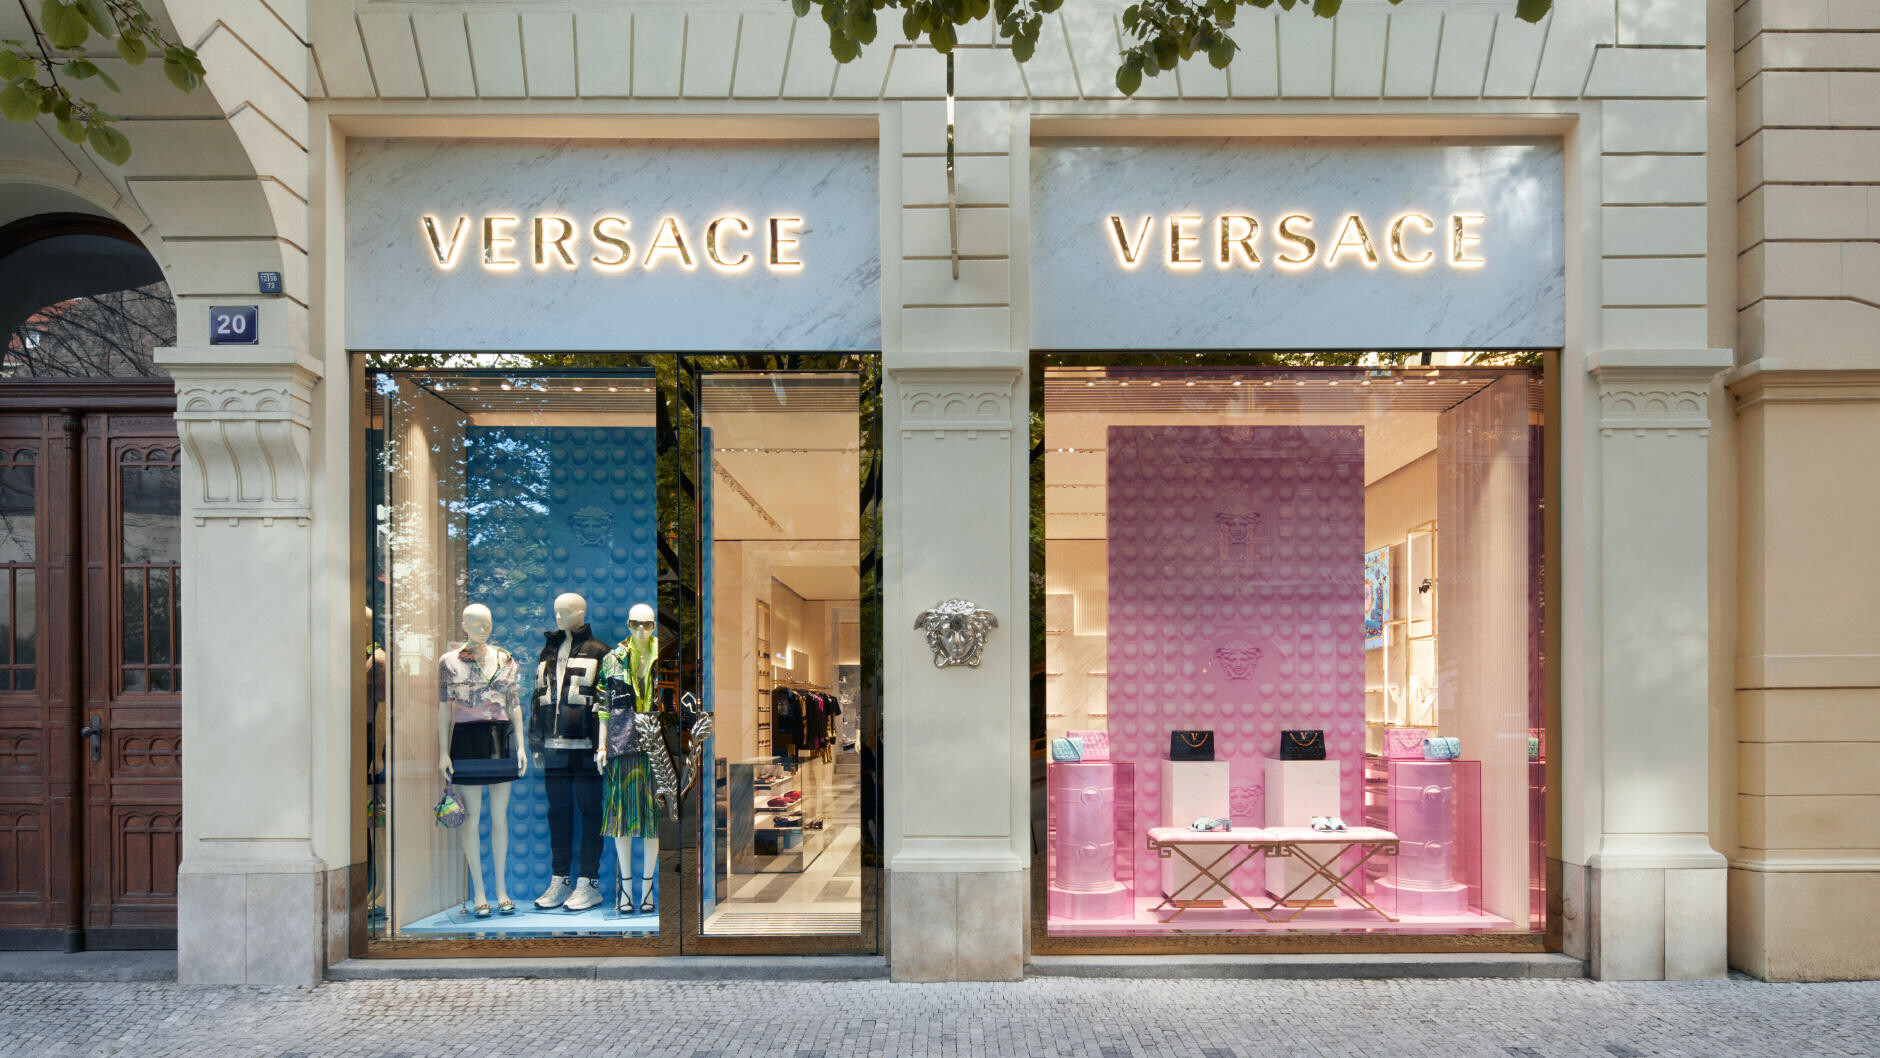 Pandemie luxus nezastaví. Versace otevírá butik v Pařížské